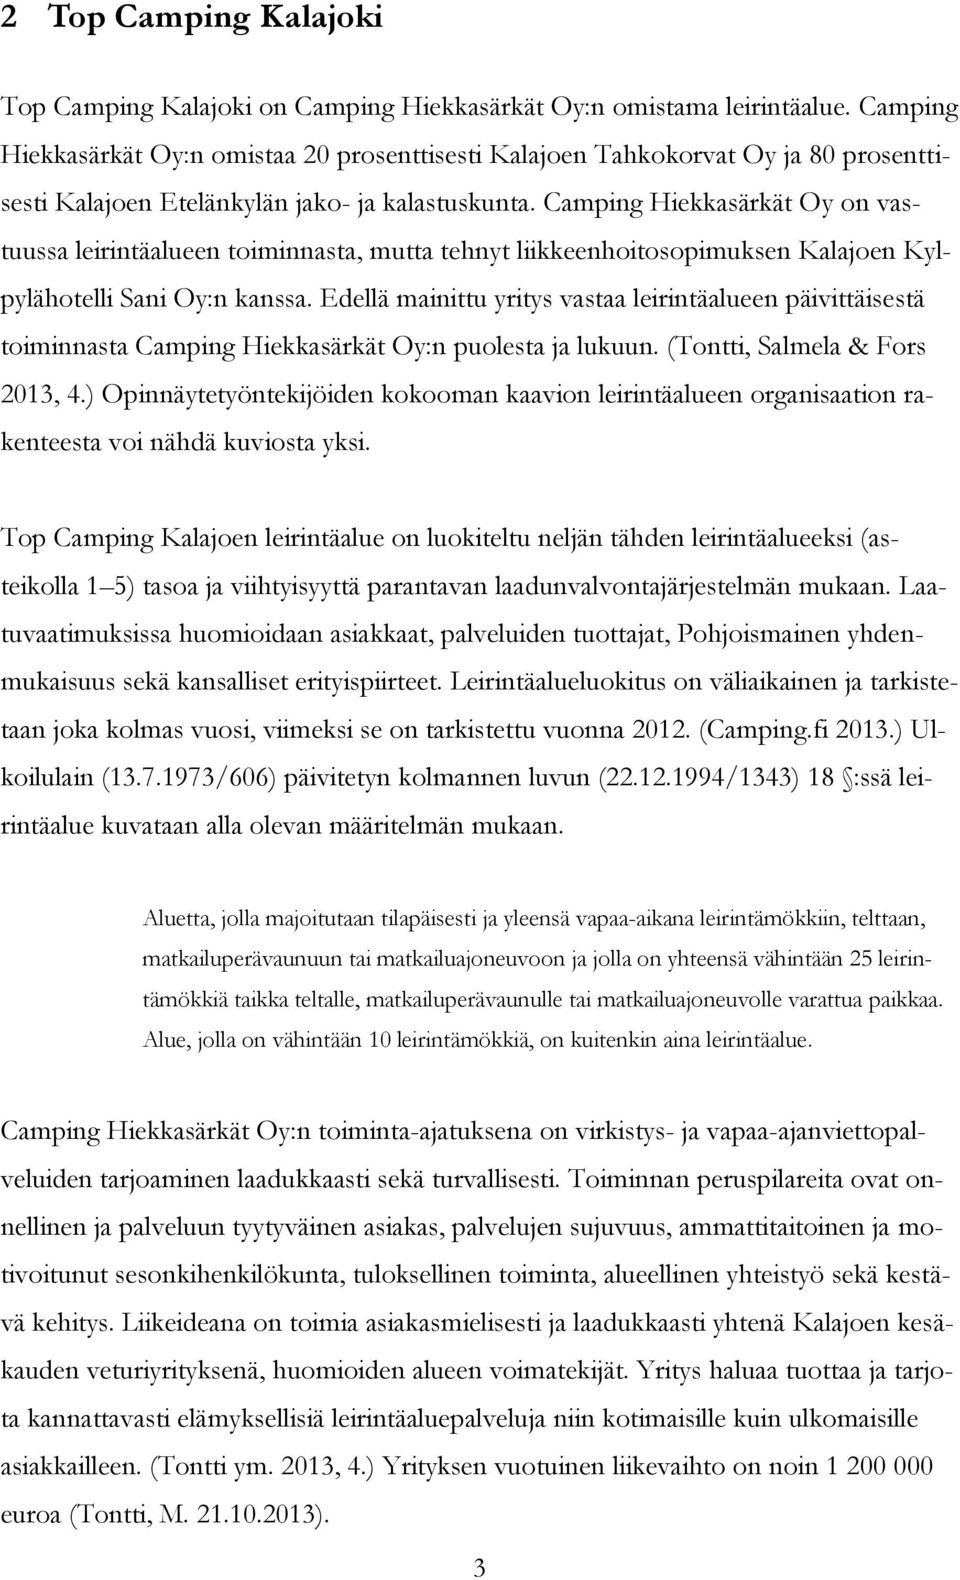 Camping Hiekkasärkät Oy on vastuussa leirintäalueen toiminnasta, mutta tehnyt liikkeenhoitosopimuksen Kalajoen Kylpylähotelli Sani Oy:n kanssa.